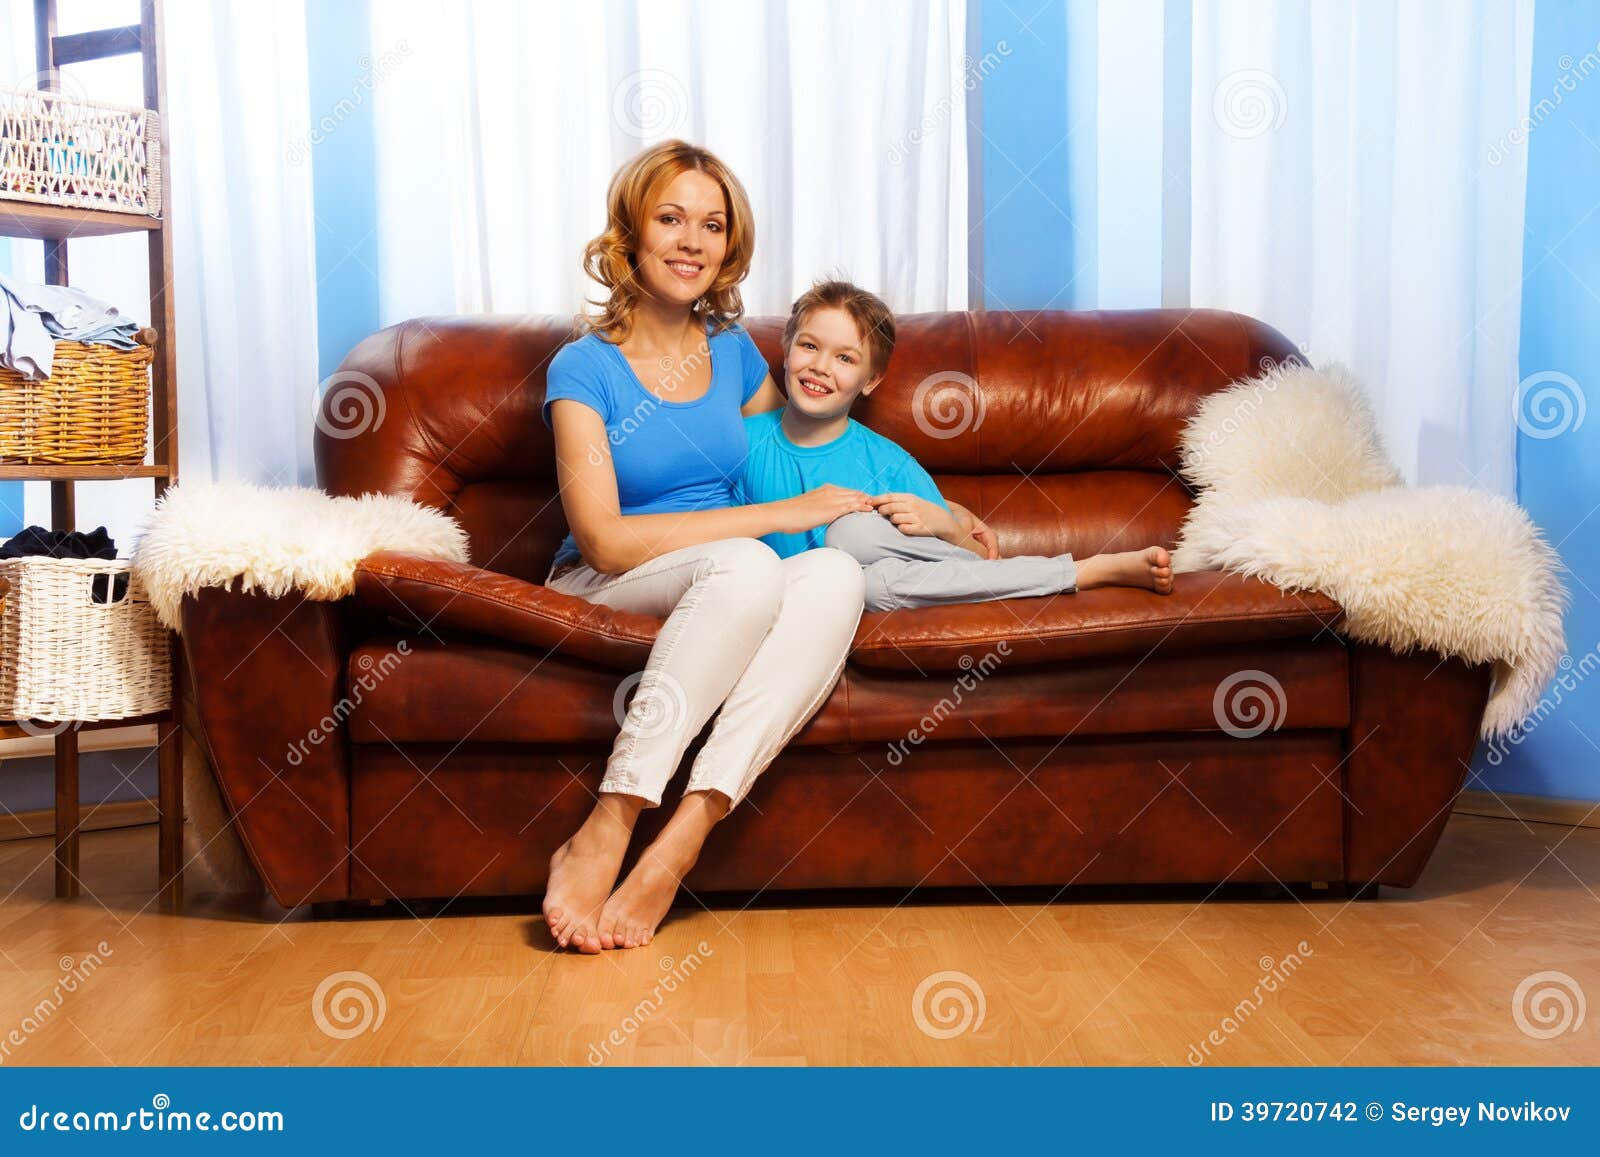 Маму на диване видео. Мама с ребенком на диване. Мать сидит с сыном на диване. Фотосессия ребенка и мамы на диване. Мама босиком на диване.